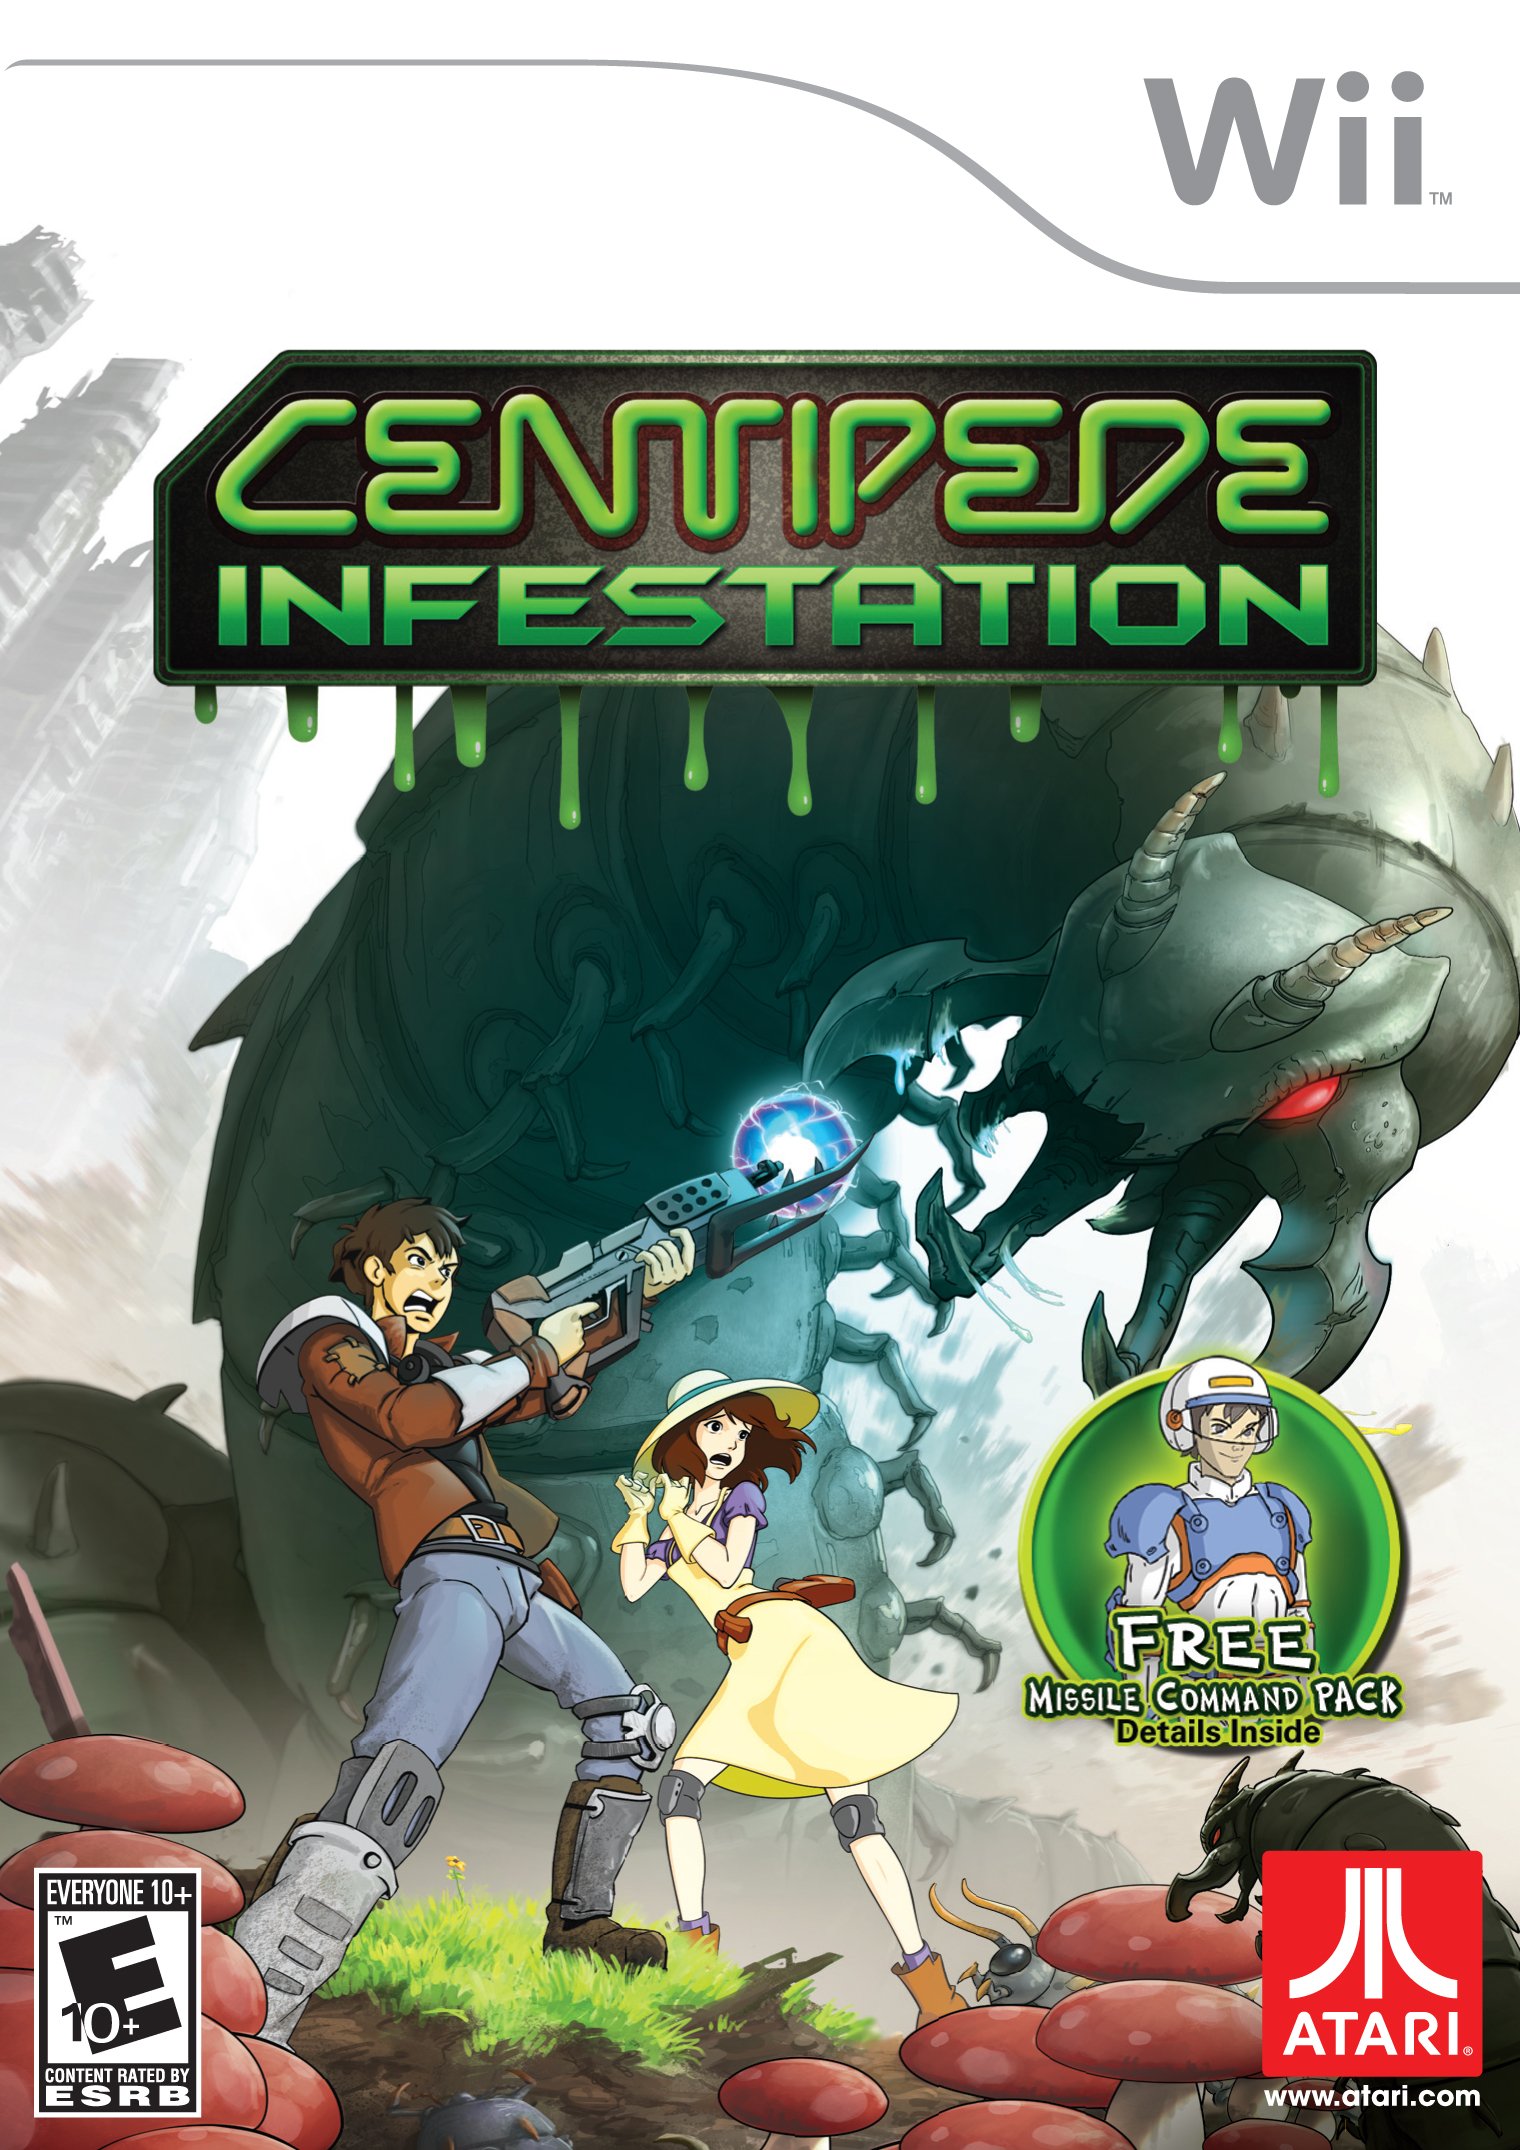 Image of Centipede: Infestation